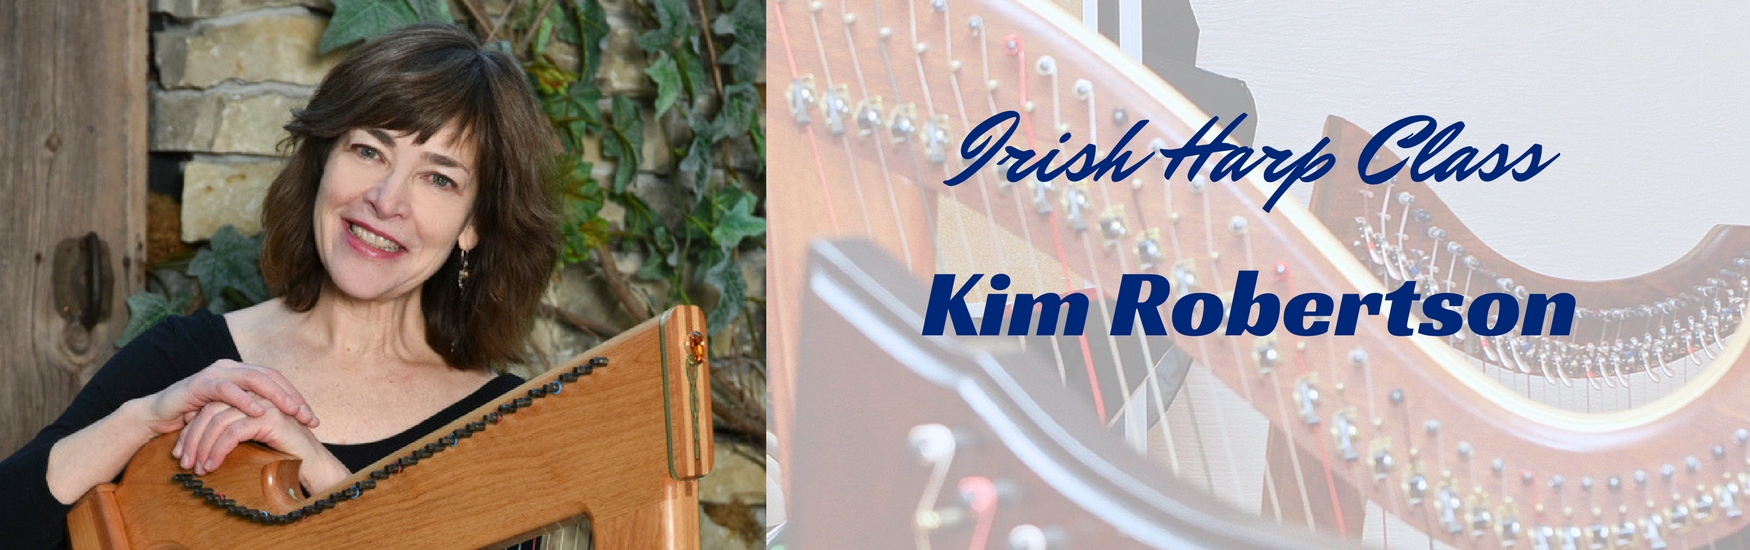 Irish Harp Class with Kim Robertson